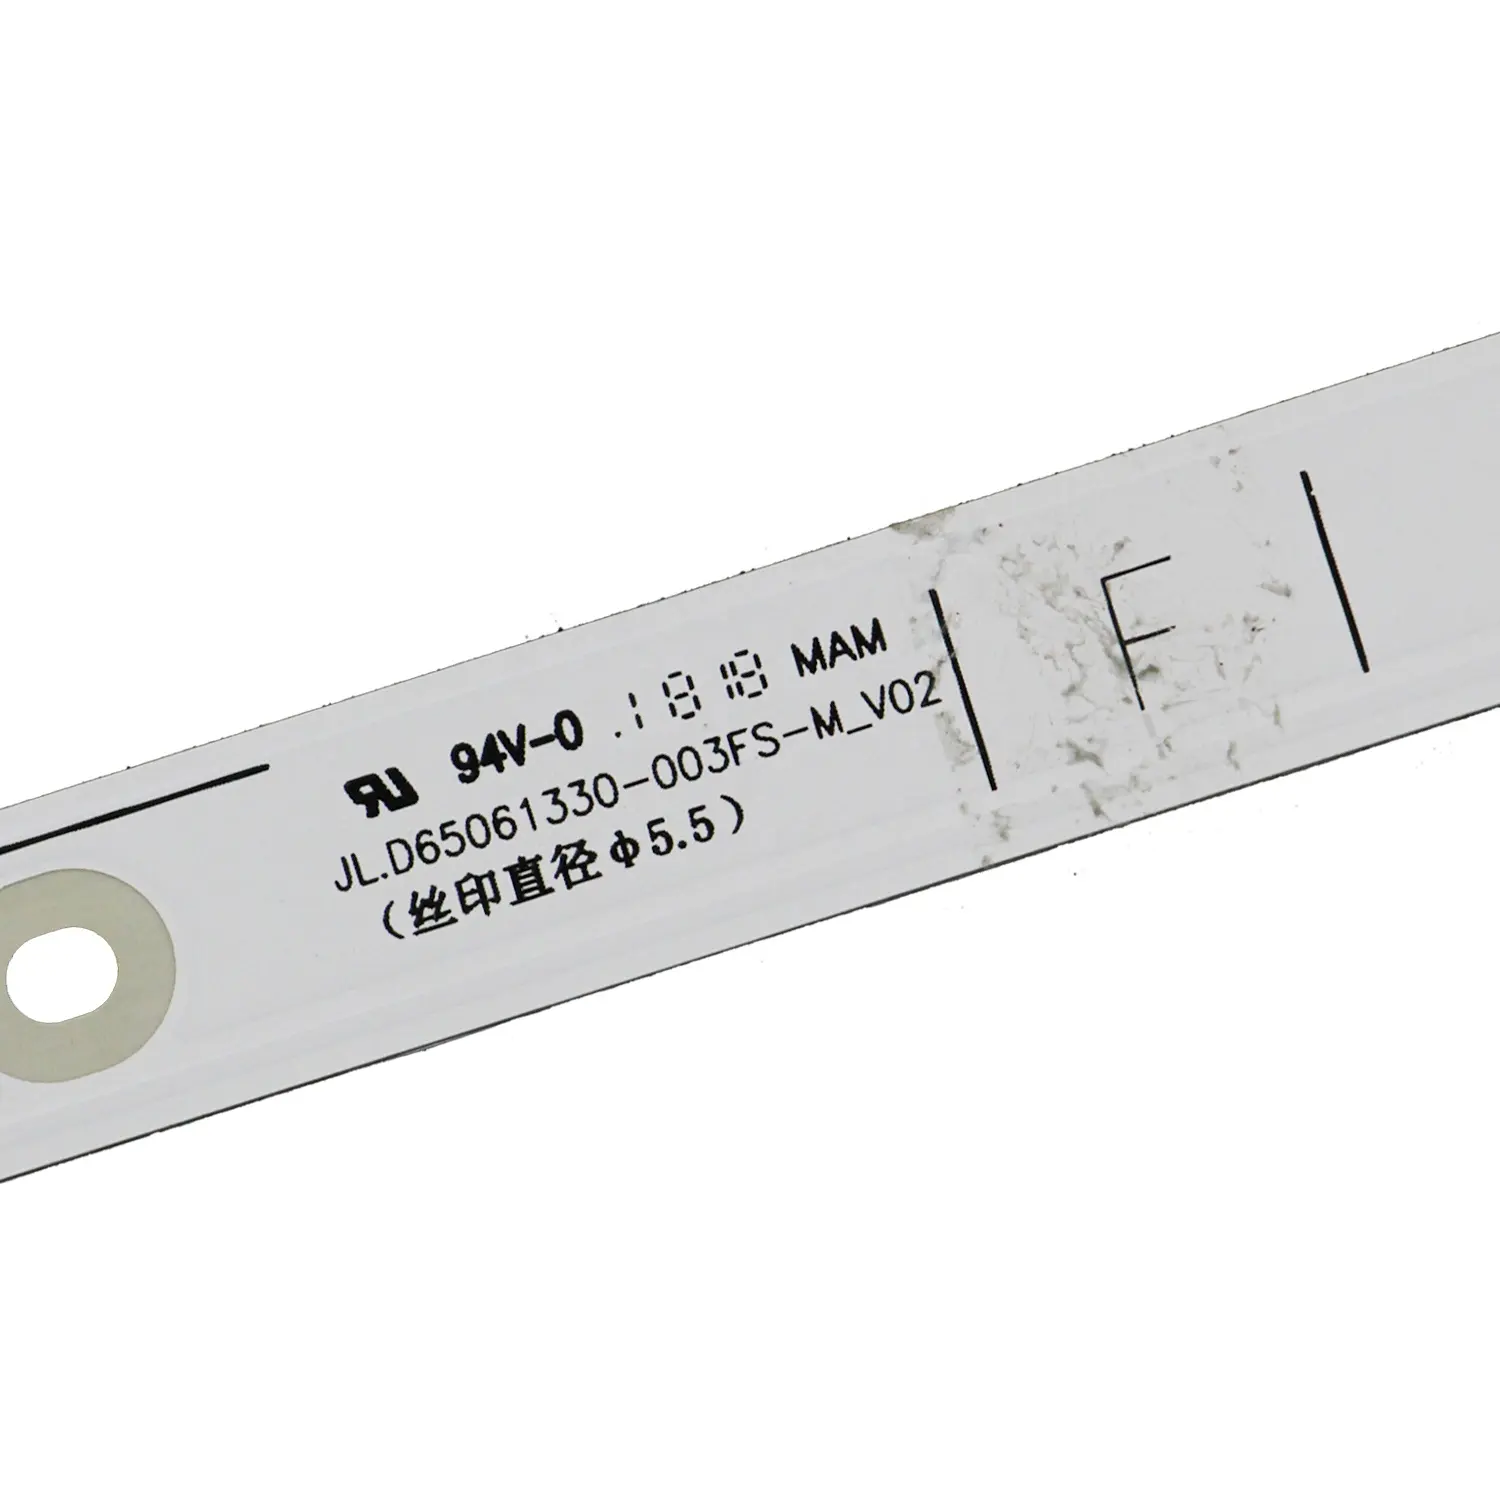 ES-911 TV light bar JL.D65061330-003FS-M_V02 use for Hi sen se 65H6E 65H7608 LED TV backlight strip 12PCS/set